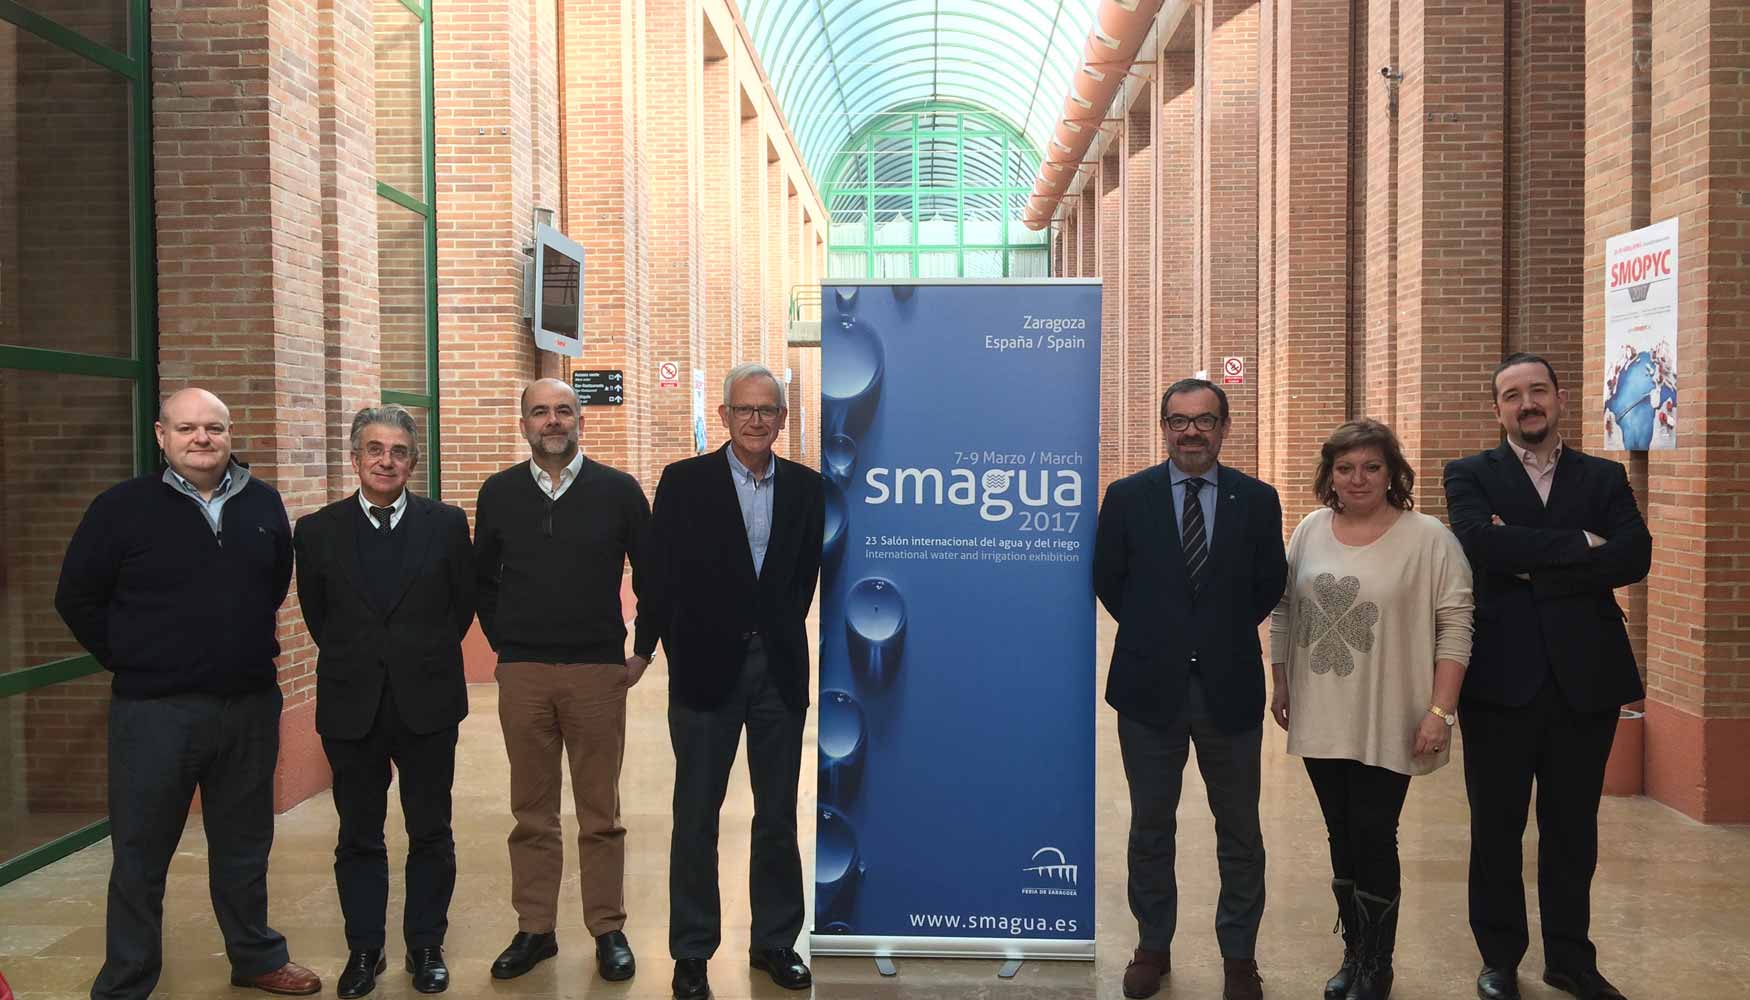 Jurado del Concurso de Novedades Tcnicas de Smagua y equipo de Feria de Zaragoza